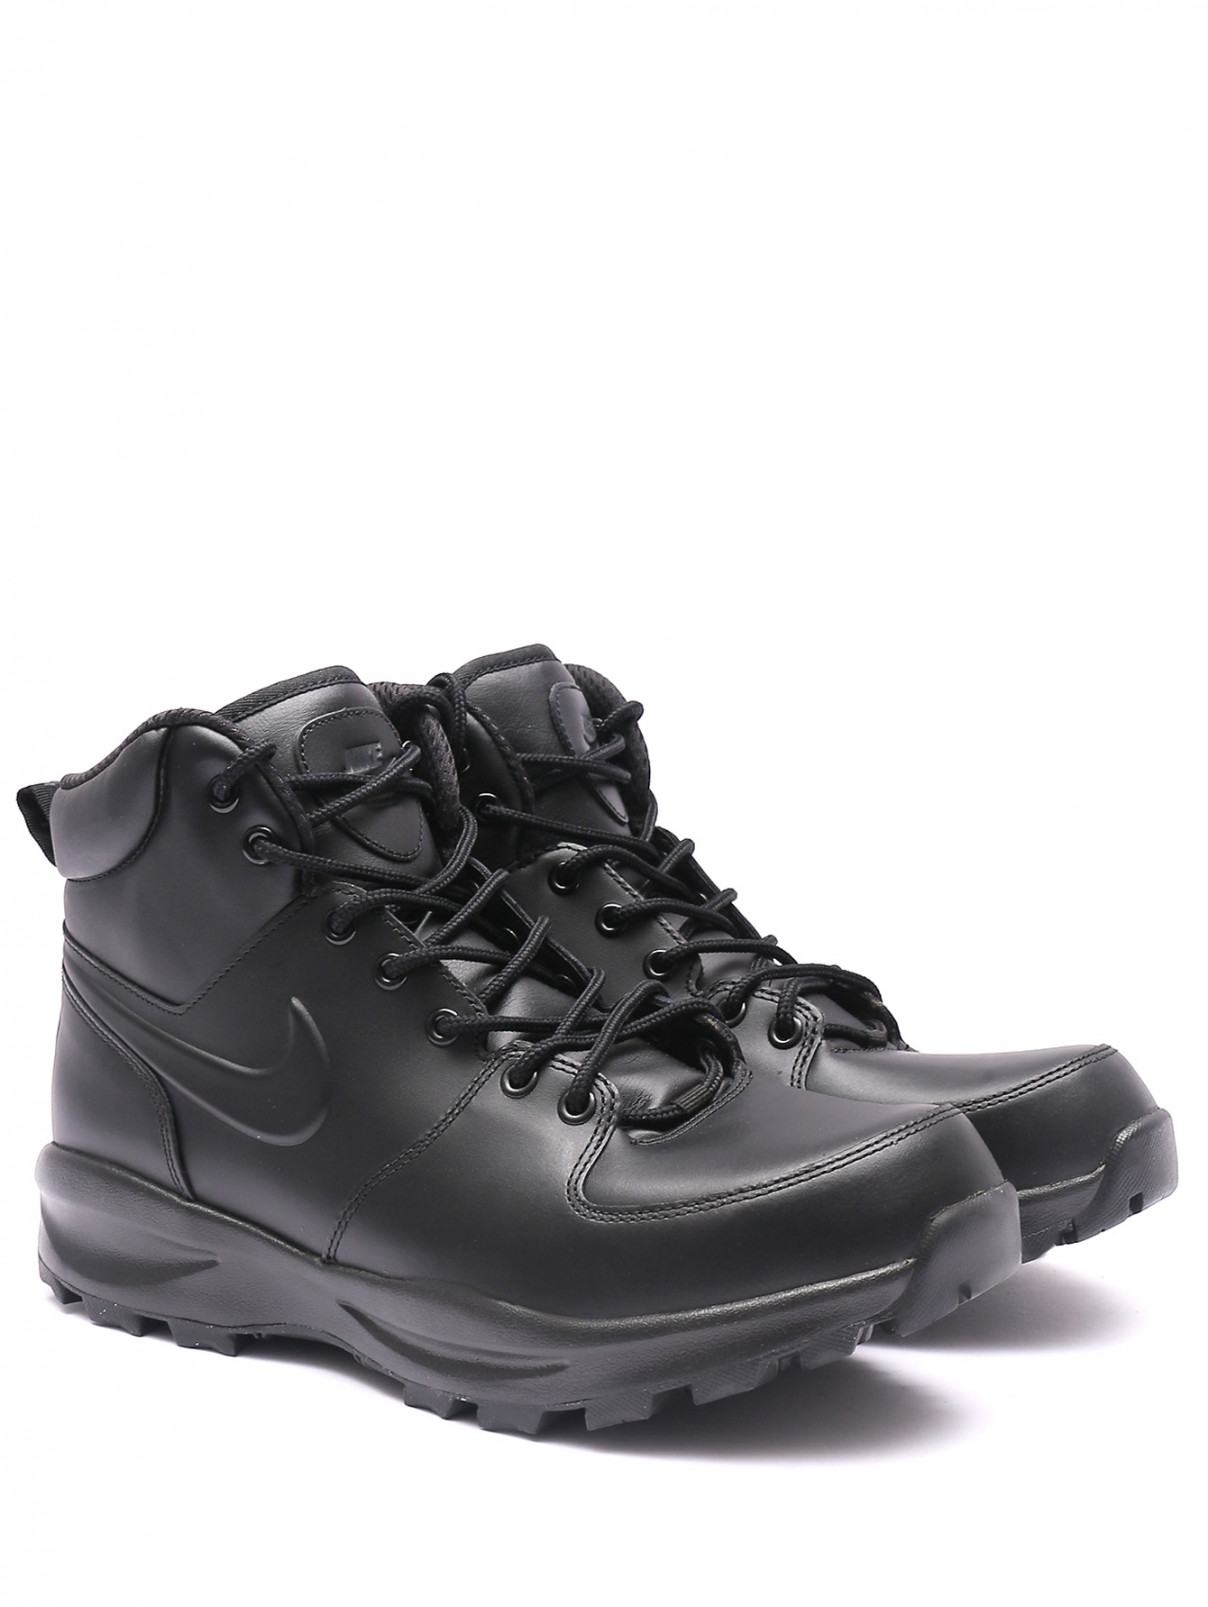 Комбинированные ботинки на шнурках с логотипом Nike  –  Общий вид  – Цвет:  Черный